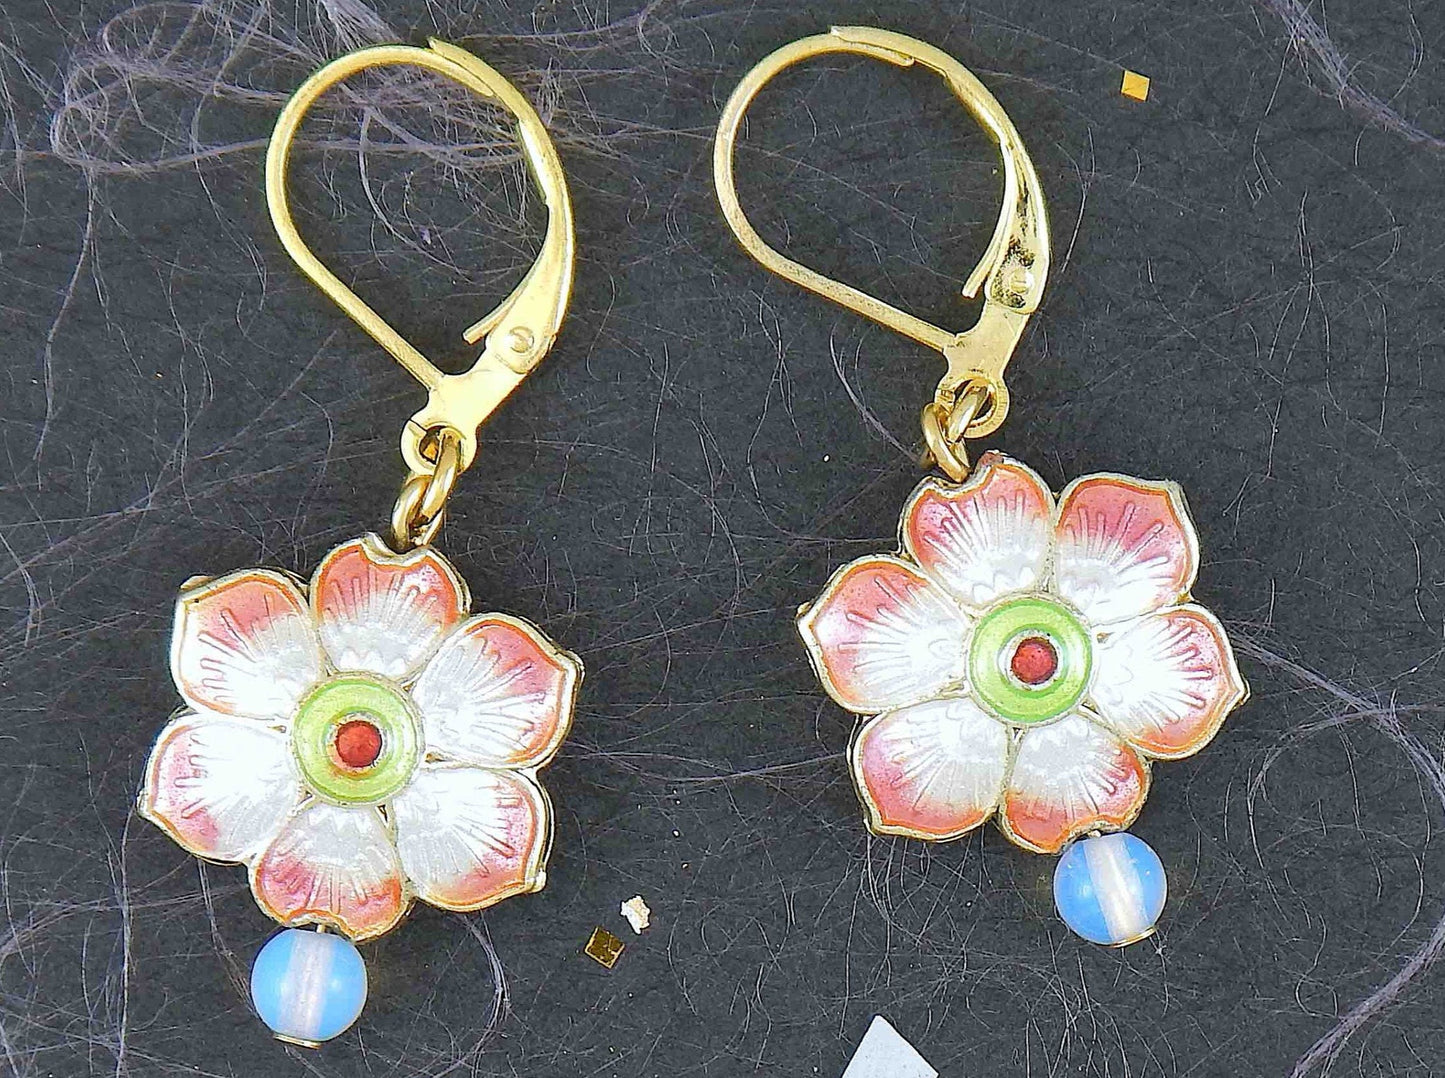 Boucles d'oreilles courtes petites fleurs émaillées offertes en 6 couleurs, pierre de lune synthétique (opalite), crochets à levier acier inoxydable doré